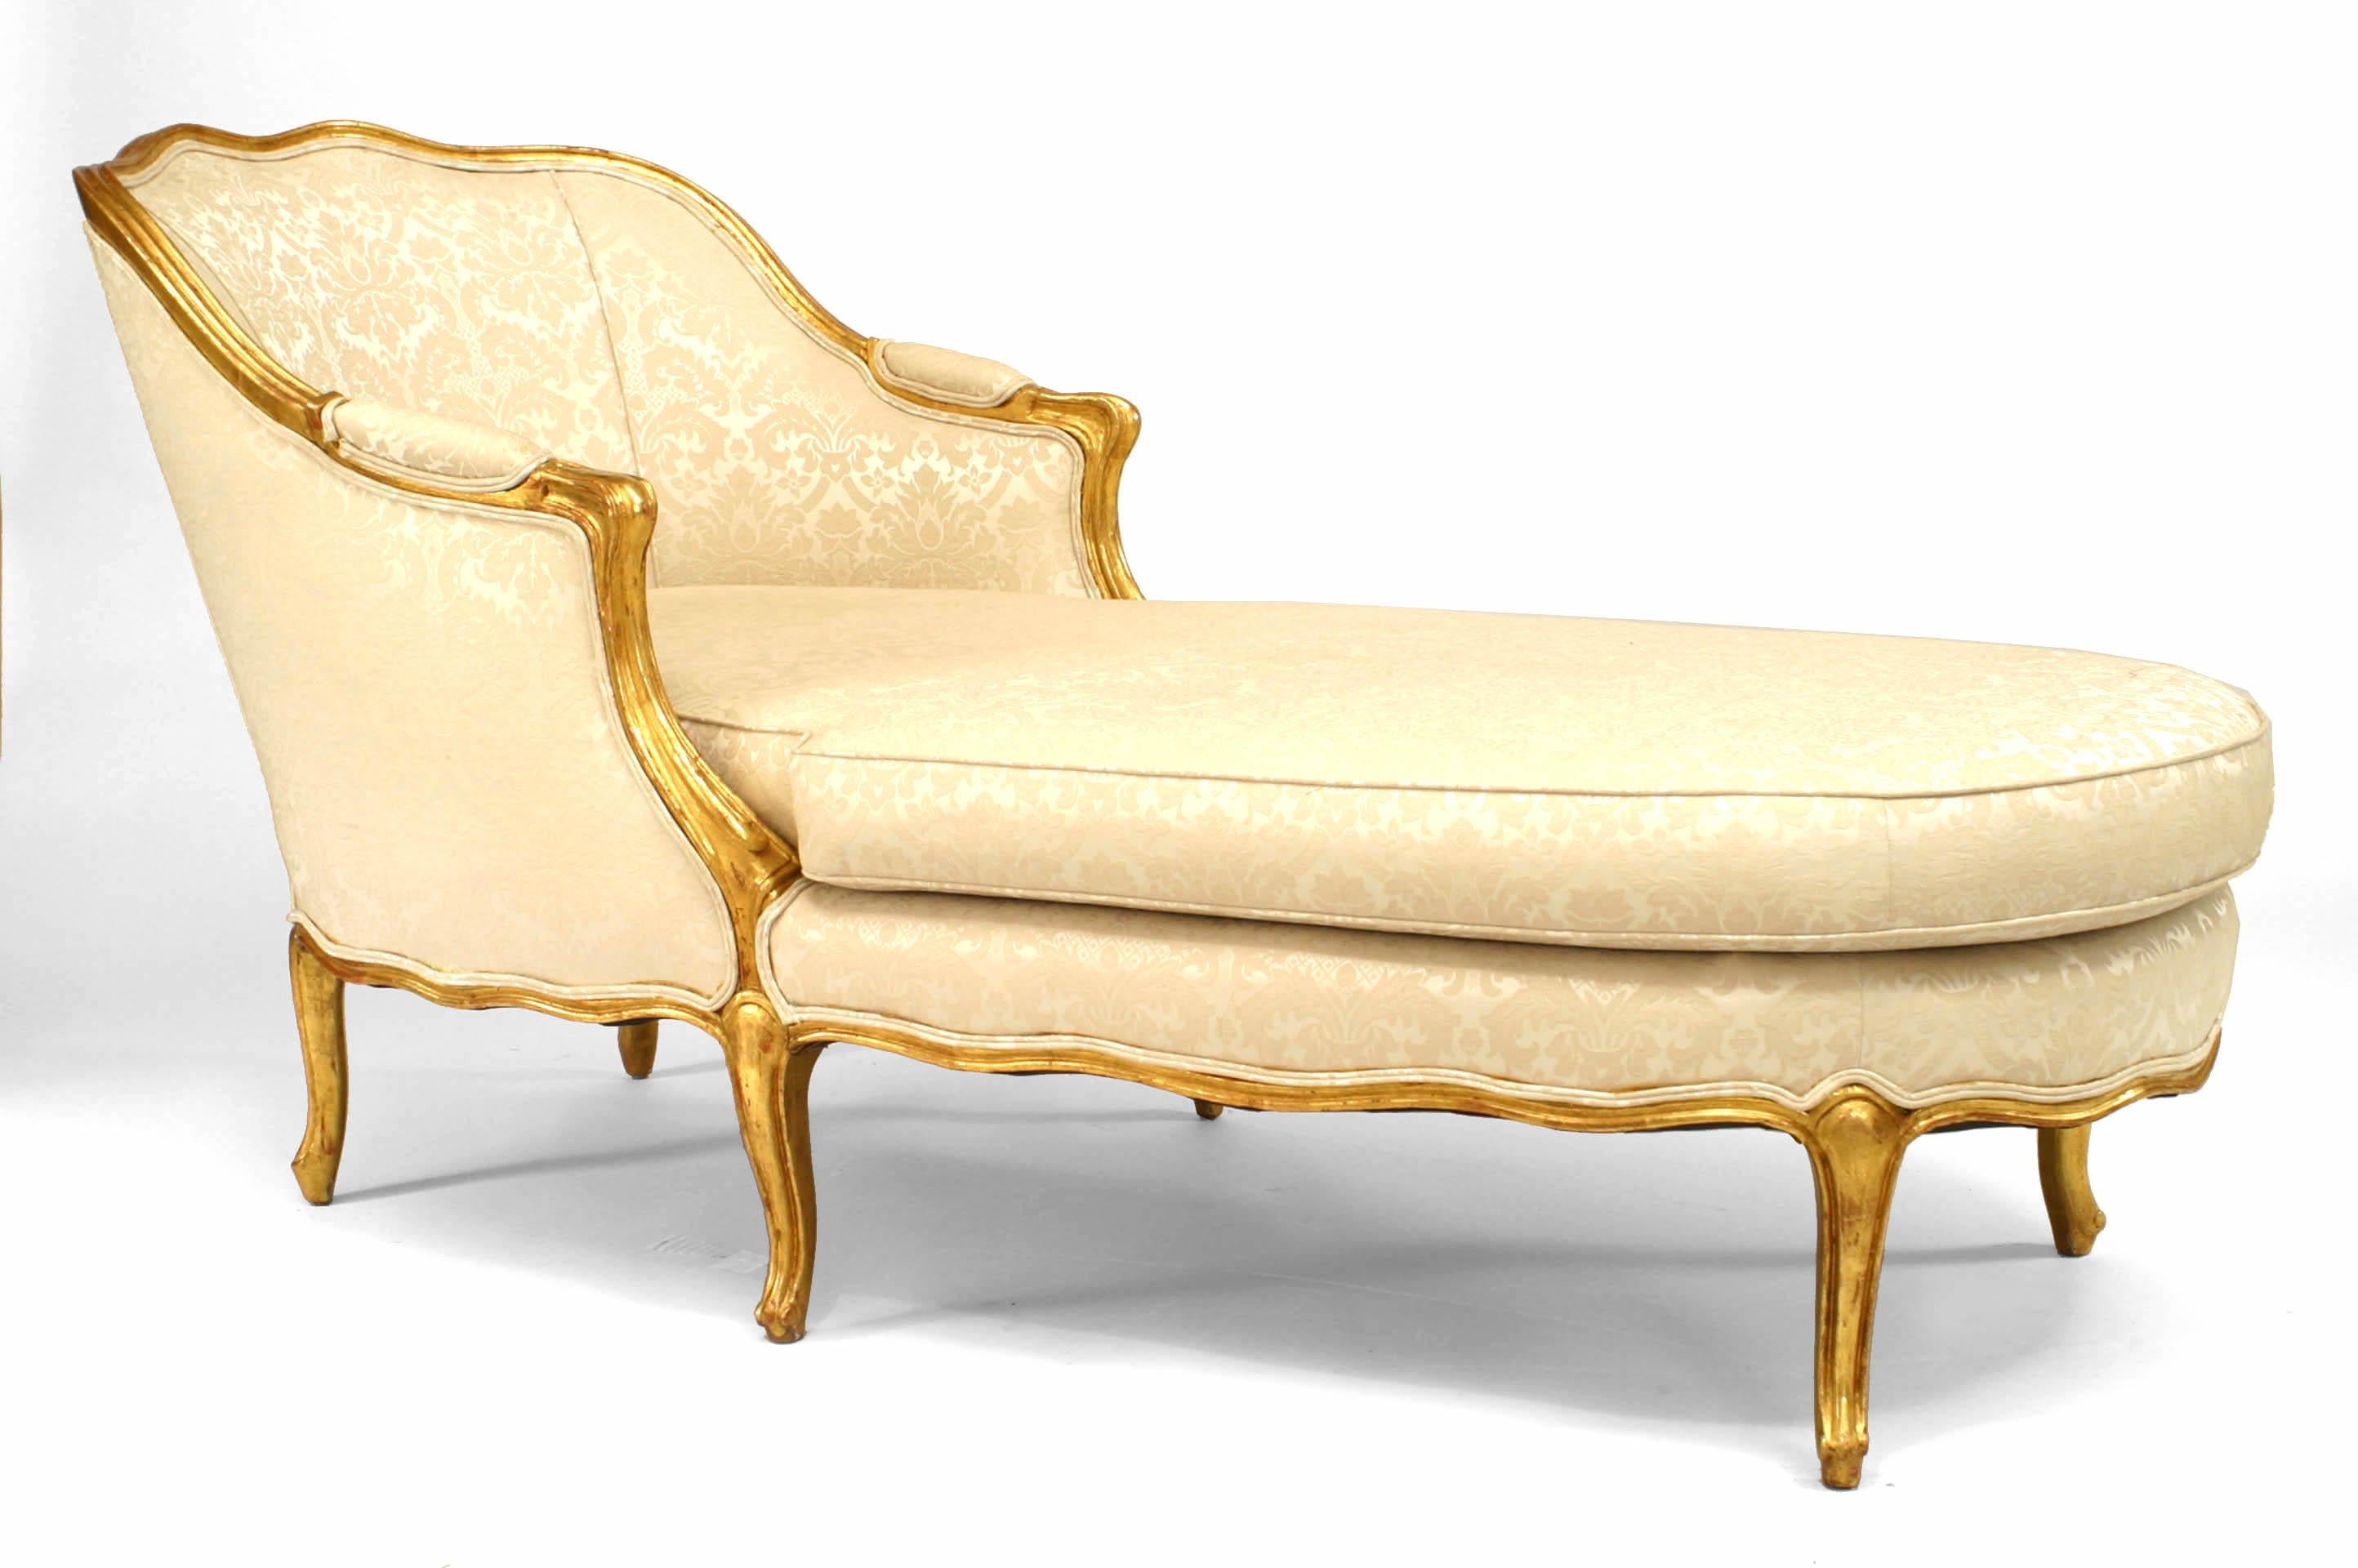 Chaise longue de style Louis XV français '19ème-20ème siècle' en vermeil avec tapisserie et coussin en damas blanc.